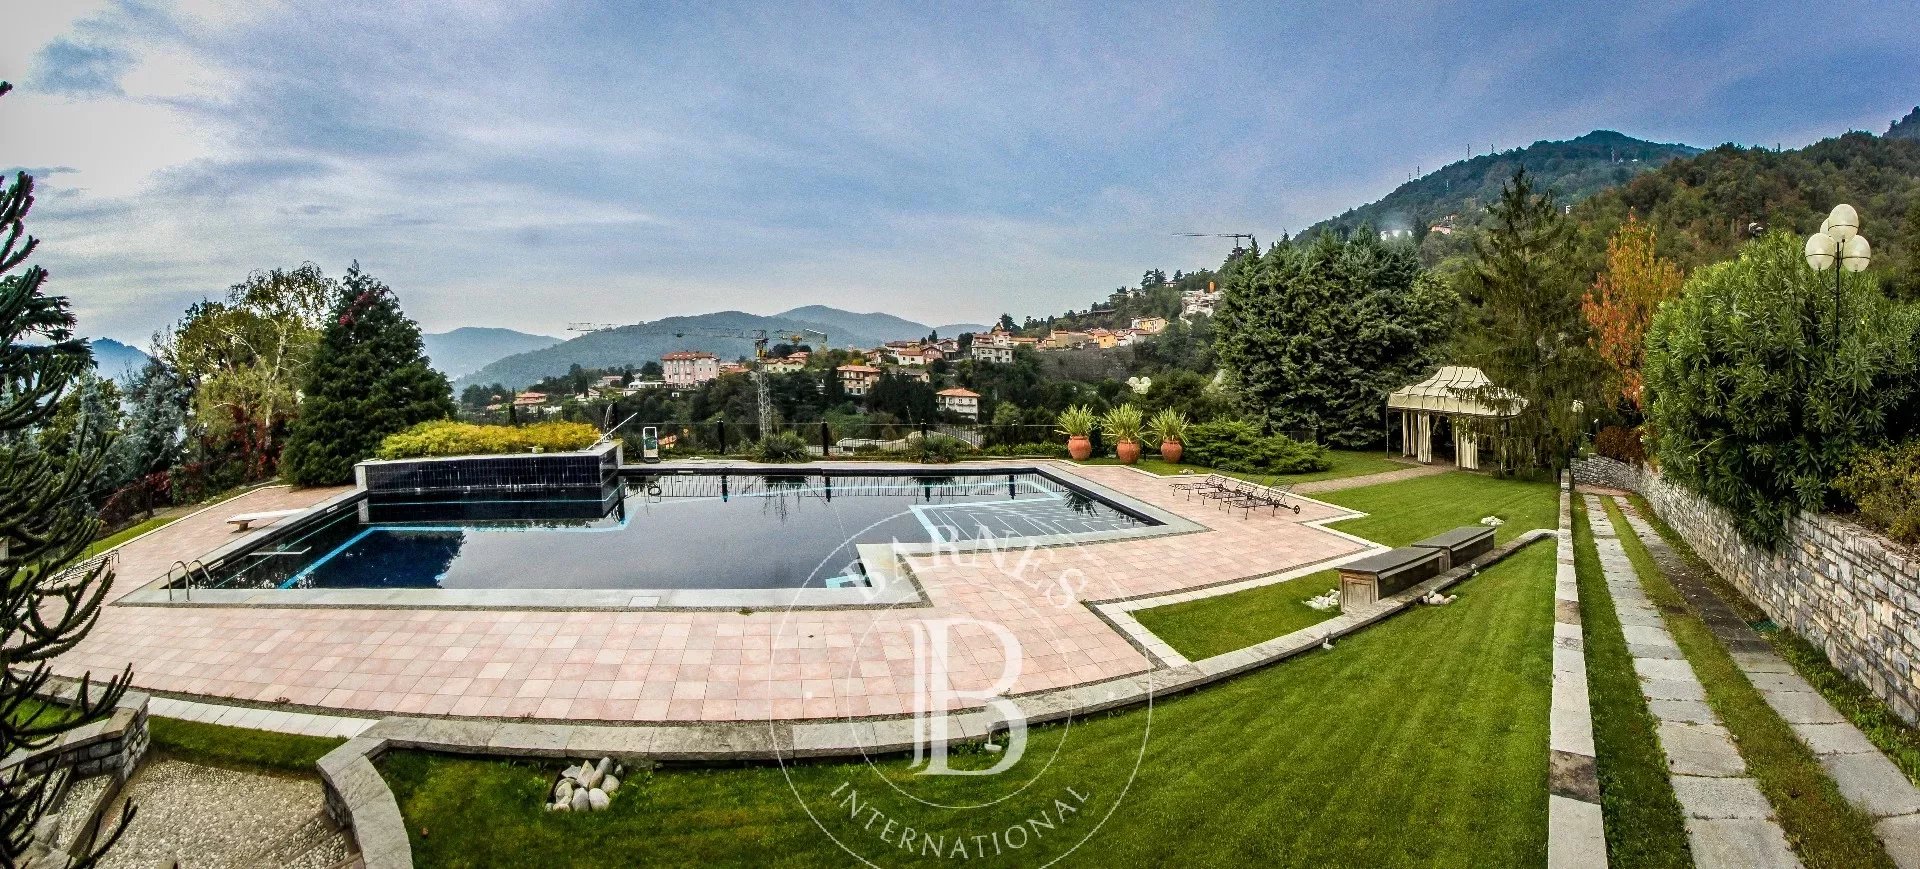 Villa Cernobbio - picture 4 title=